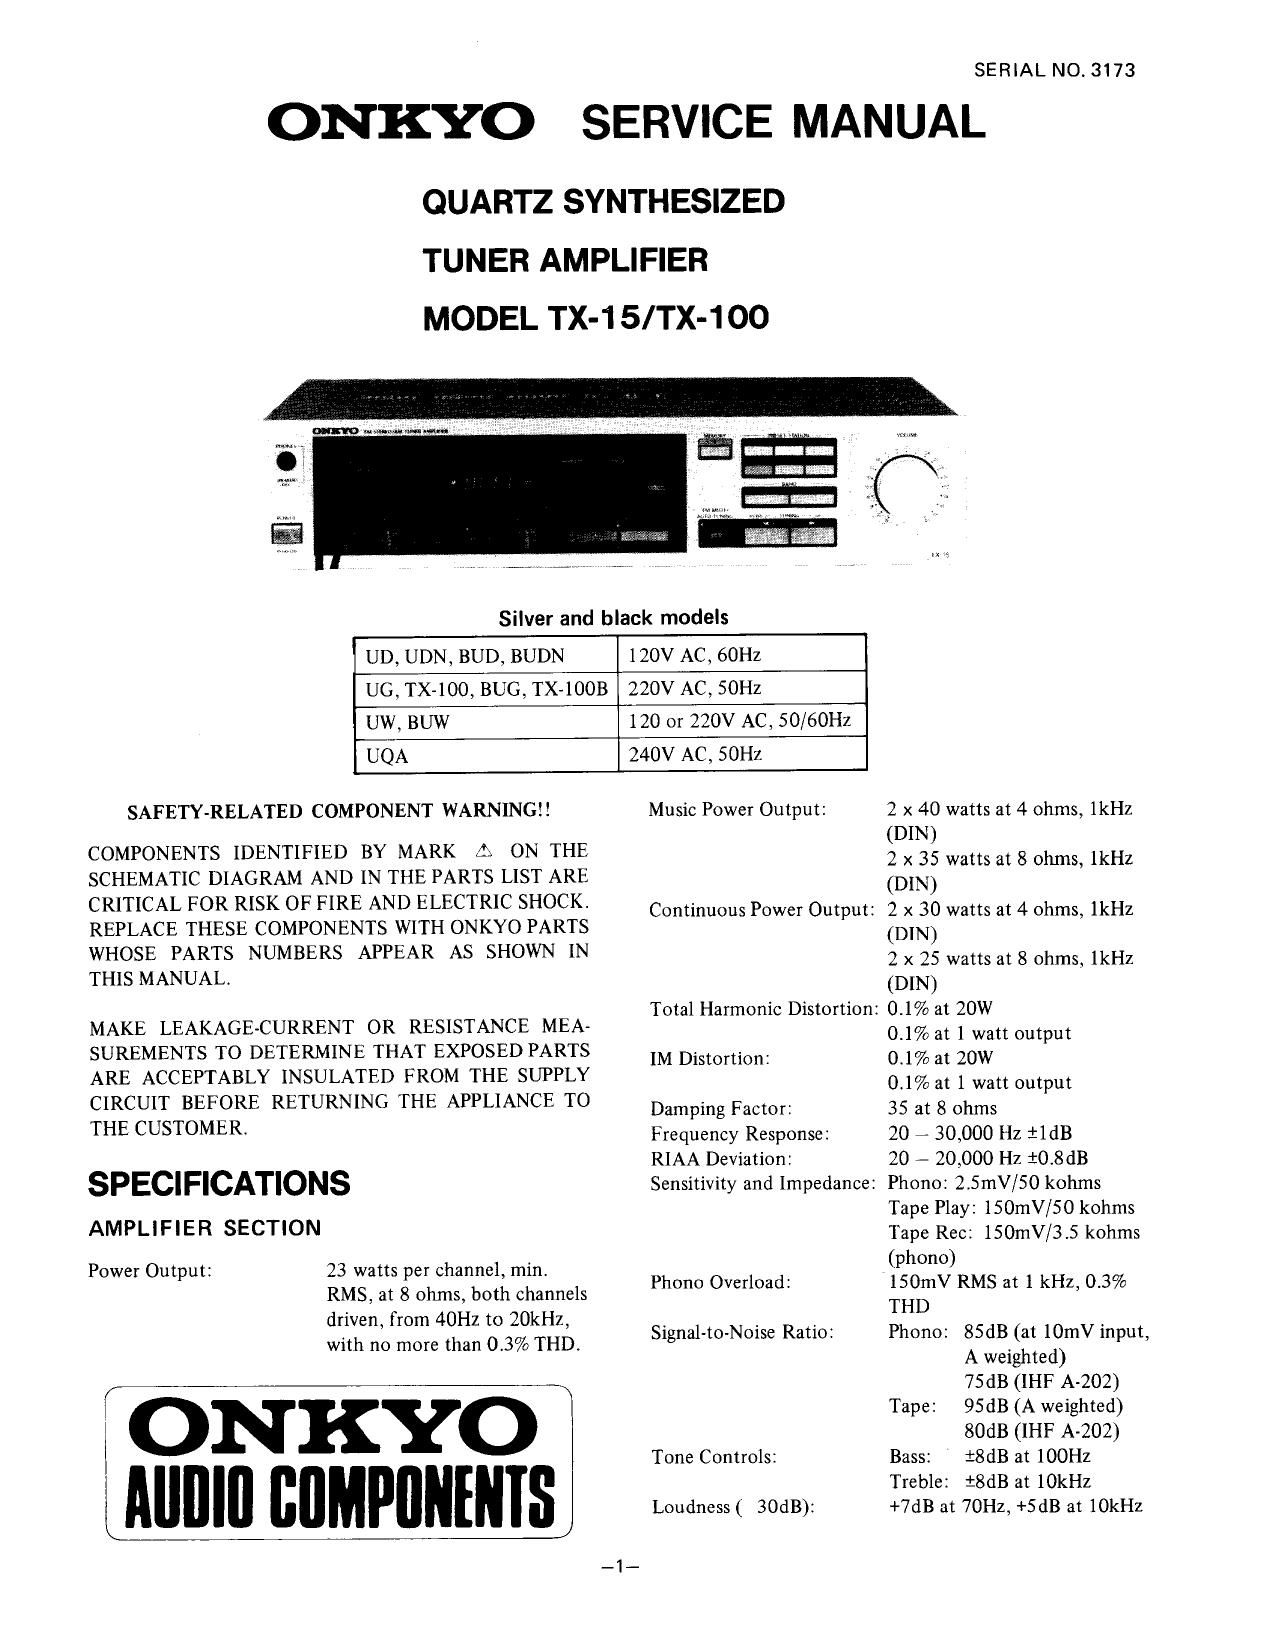 Onkyo TX 15 Service Manual